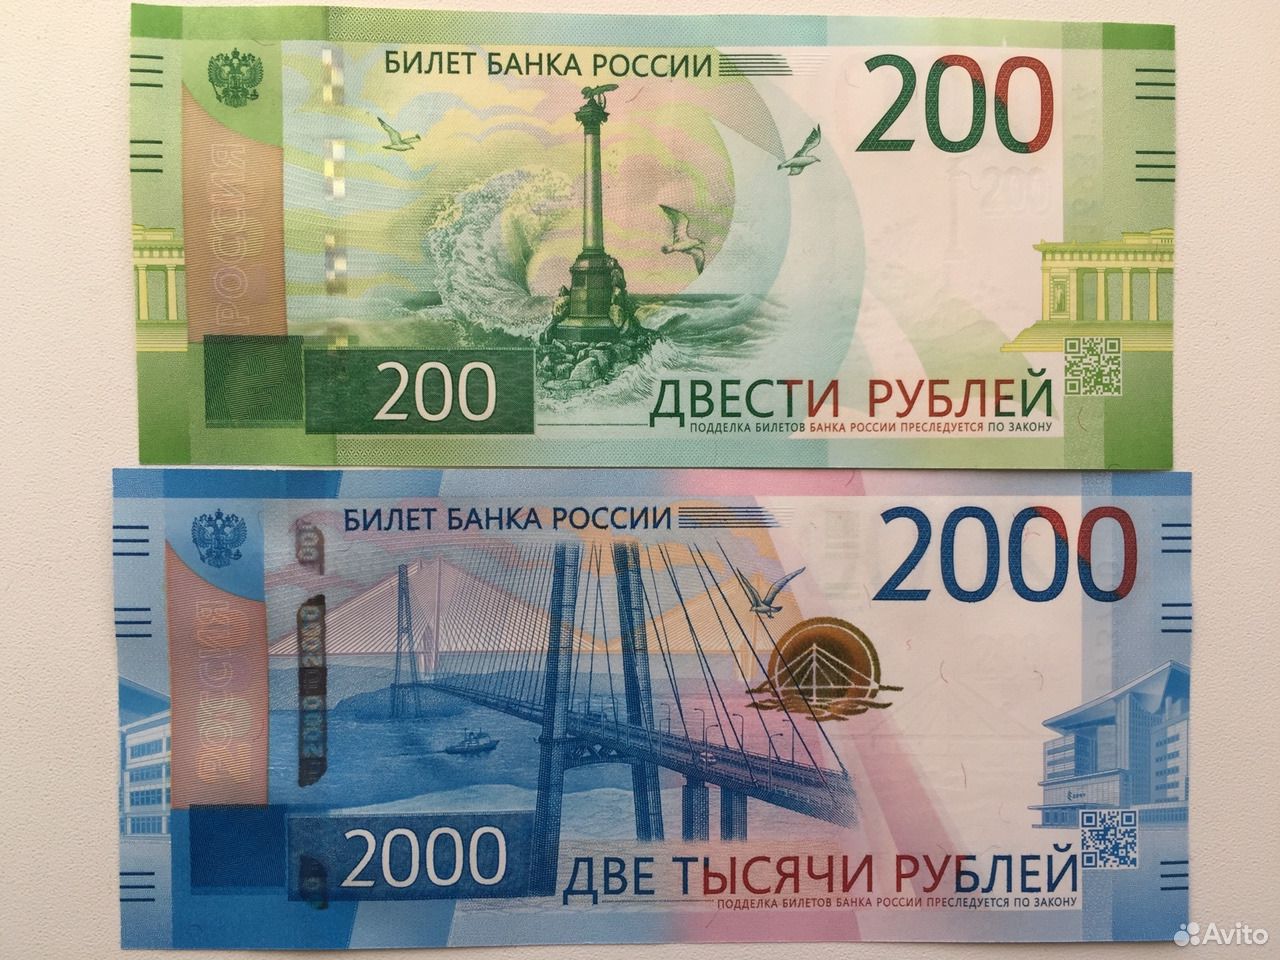 10 от 200 рублей. 2000 Рублей. 2000 Рублей 2017 года. Купюра 2000 рублей. 200 Рублей банкнота.